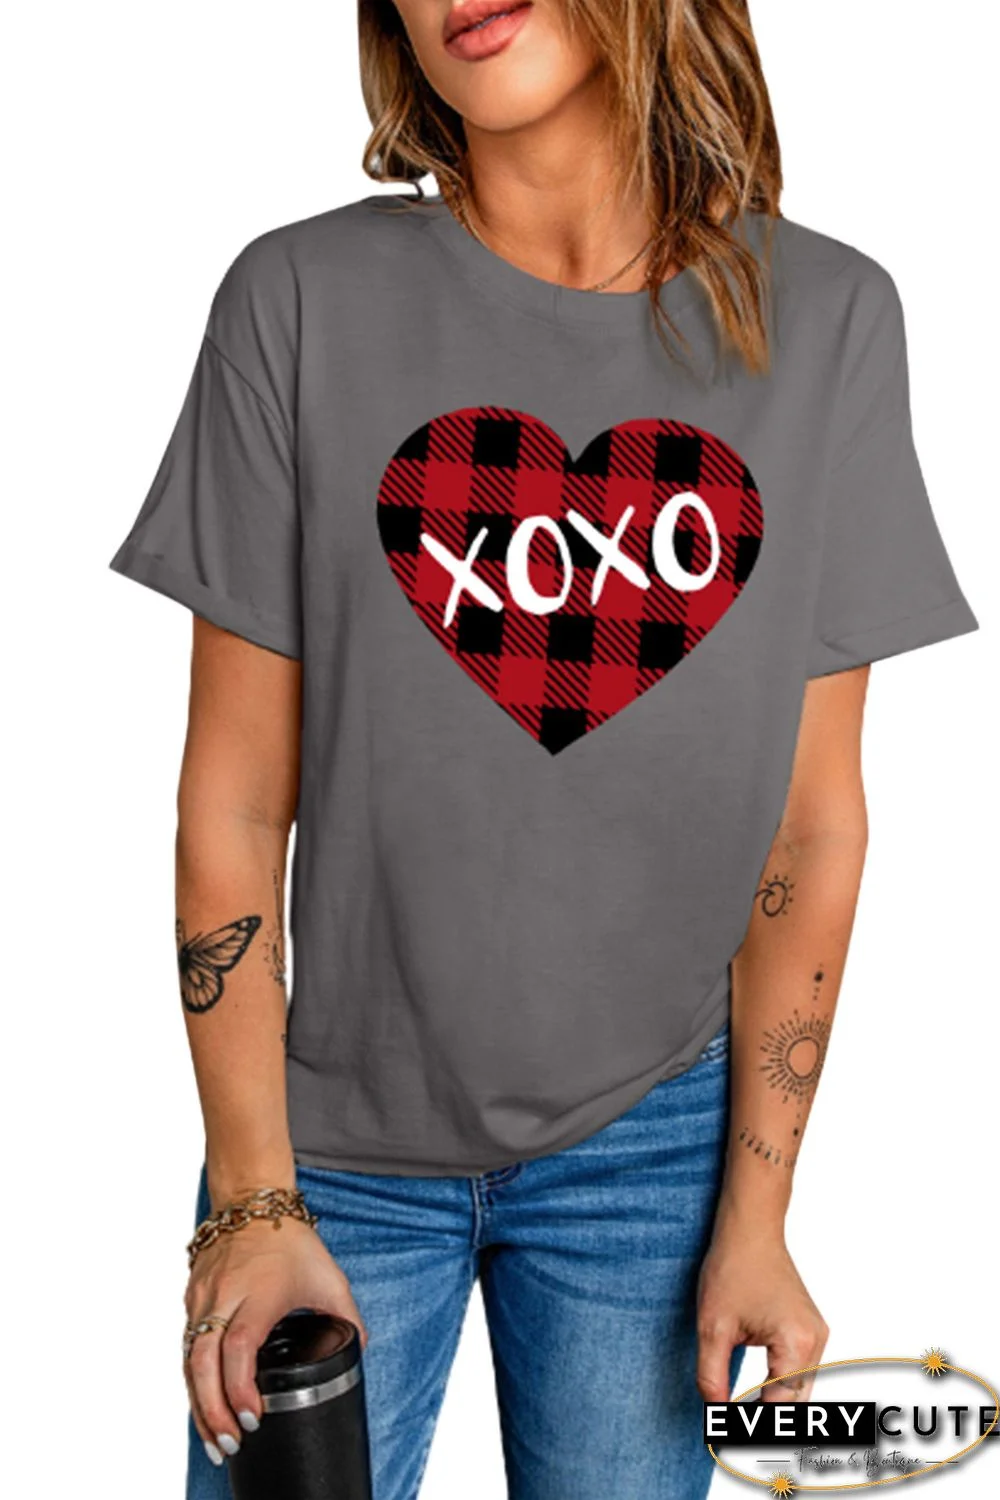 XOXO Plaid Heart Print Crew Neck Graphic Tee